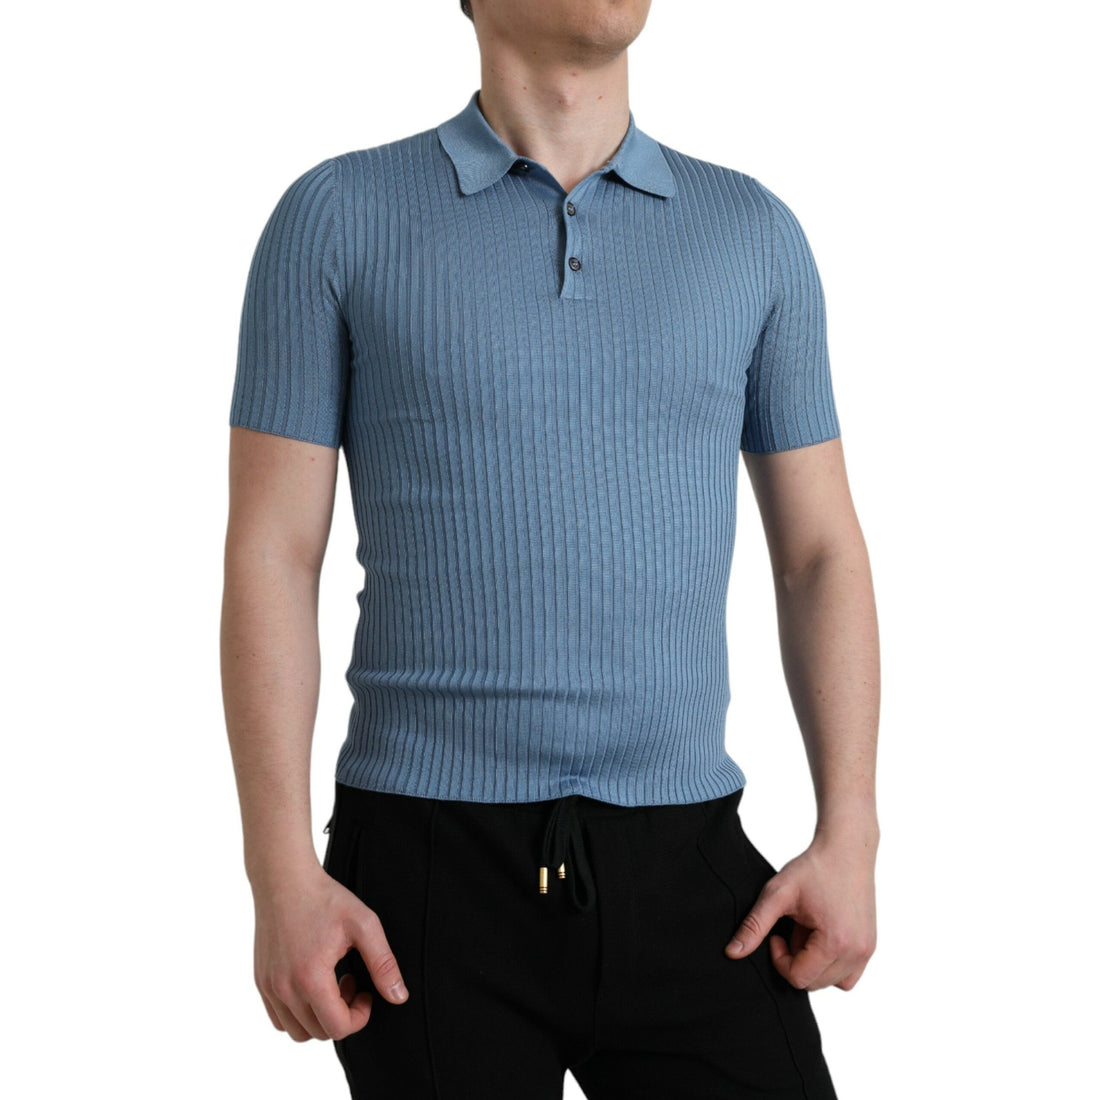 Dolce & Gabbana Sky Blue Henley Silk Short Sleeves T-shirt